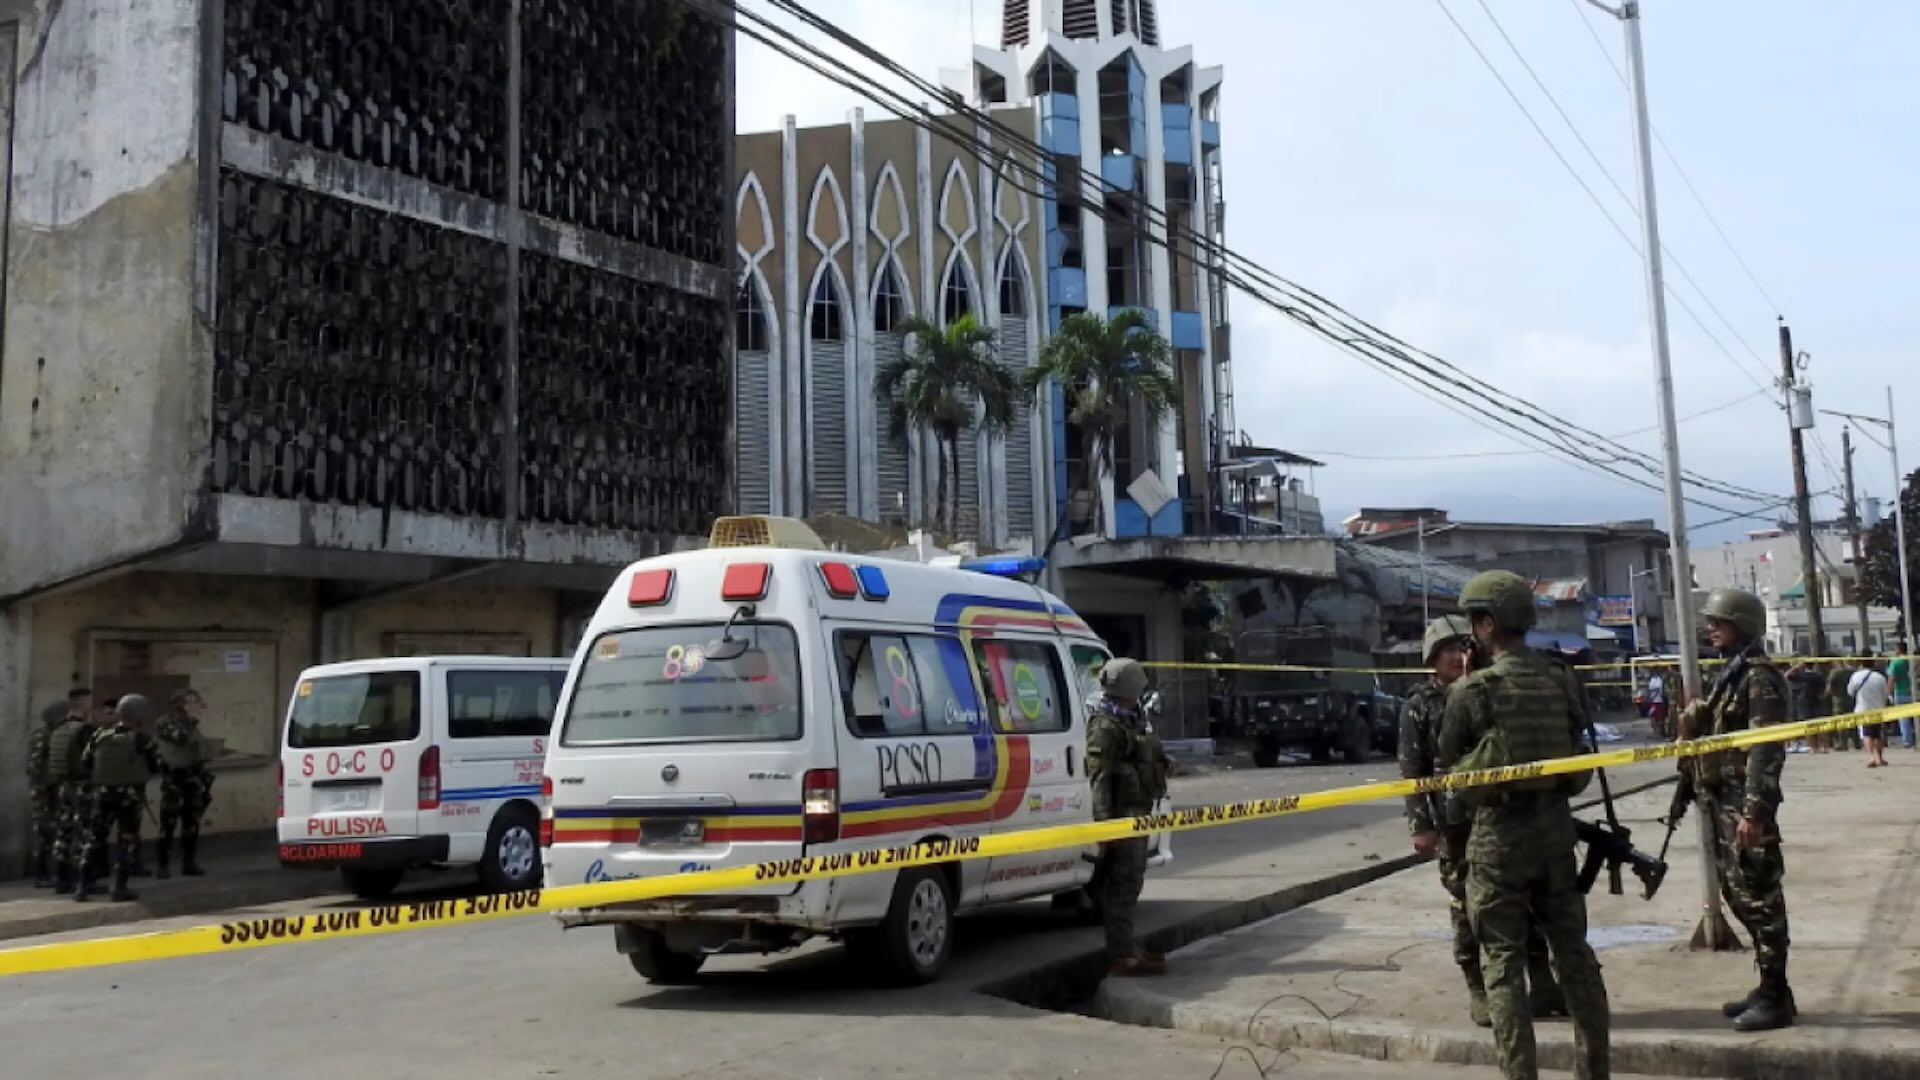 На Филиппинах во время католической мессы произошел взрыв